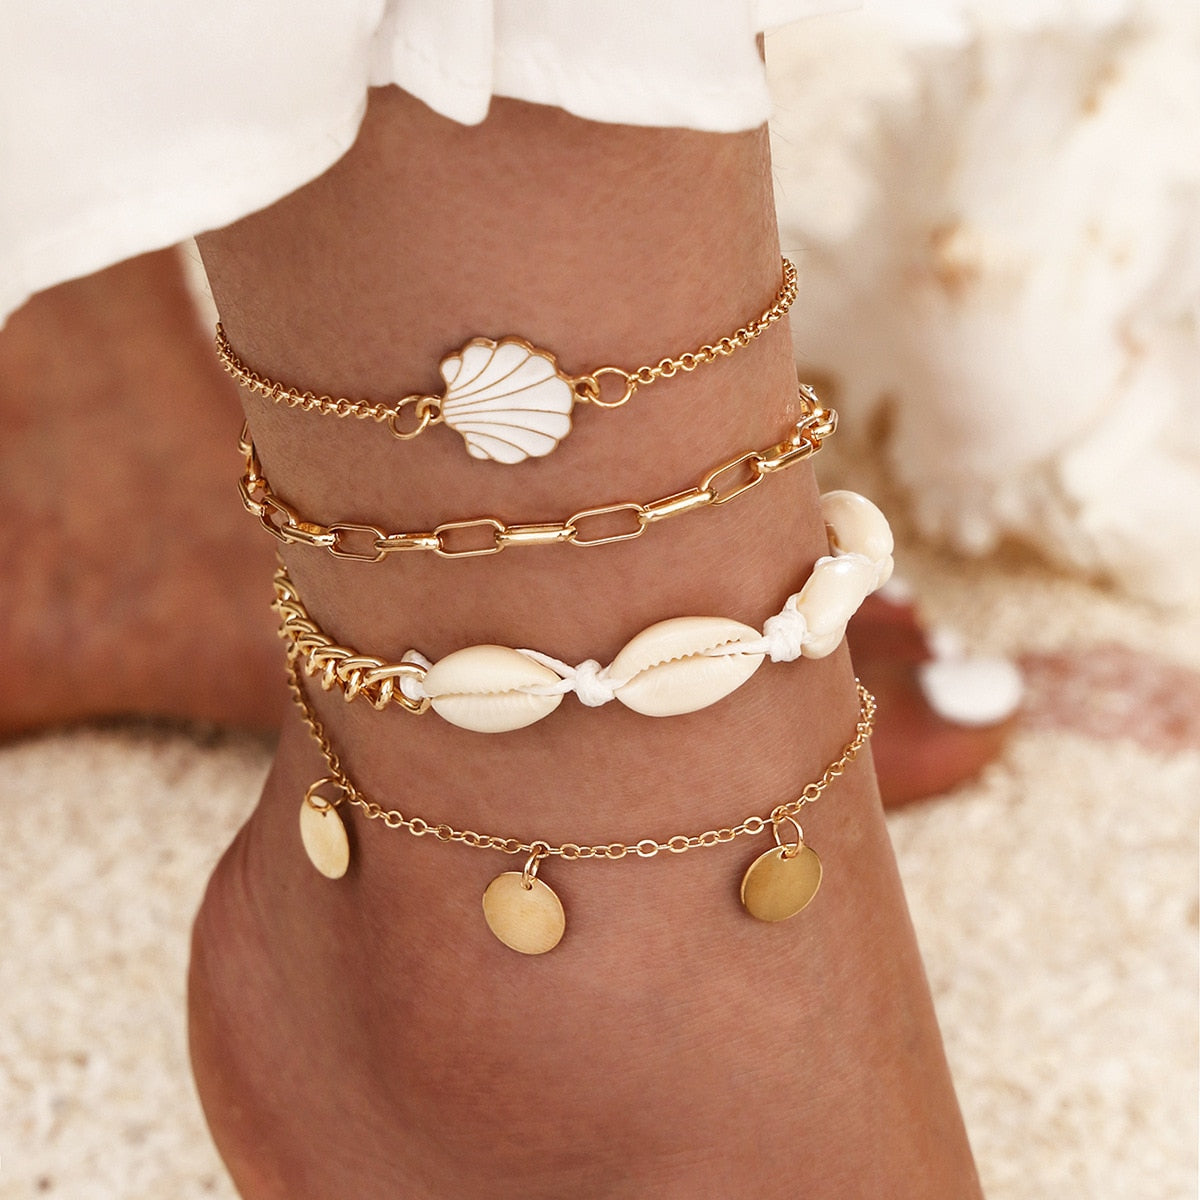 Bohemian Key Charm Anklet Set For Women Love Heart Lock Ankle Bracelet On Leg Foot Female Beach Jewelry